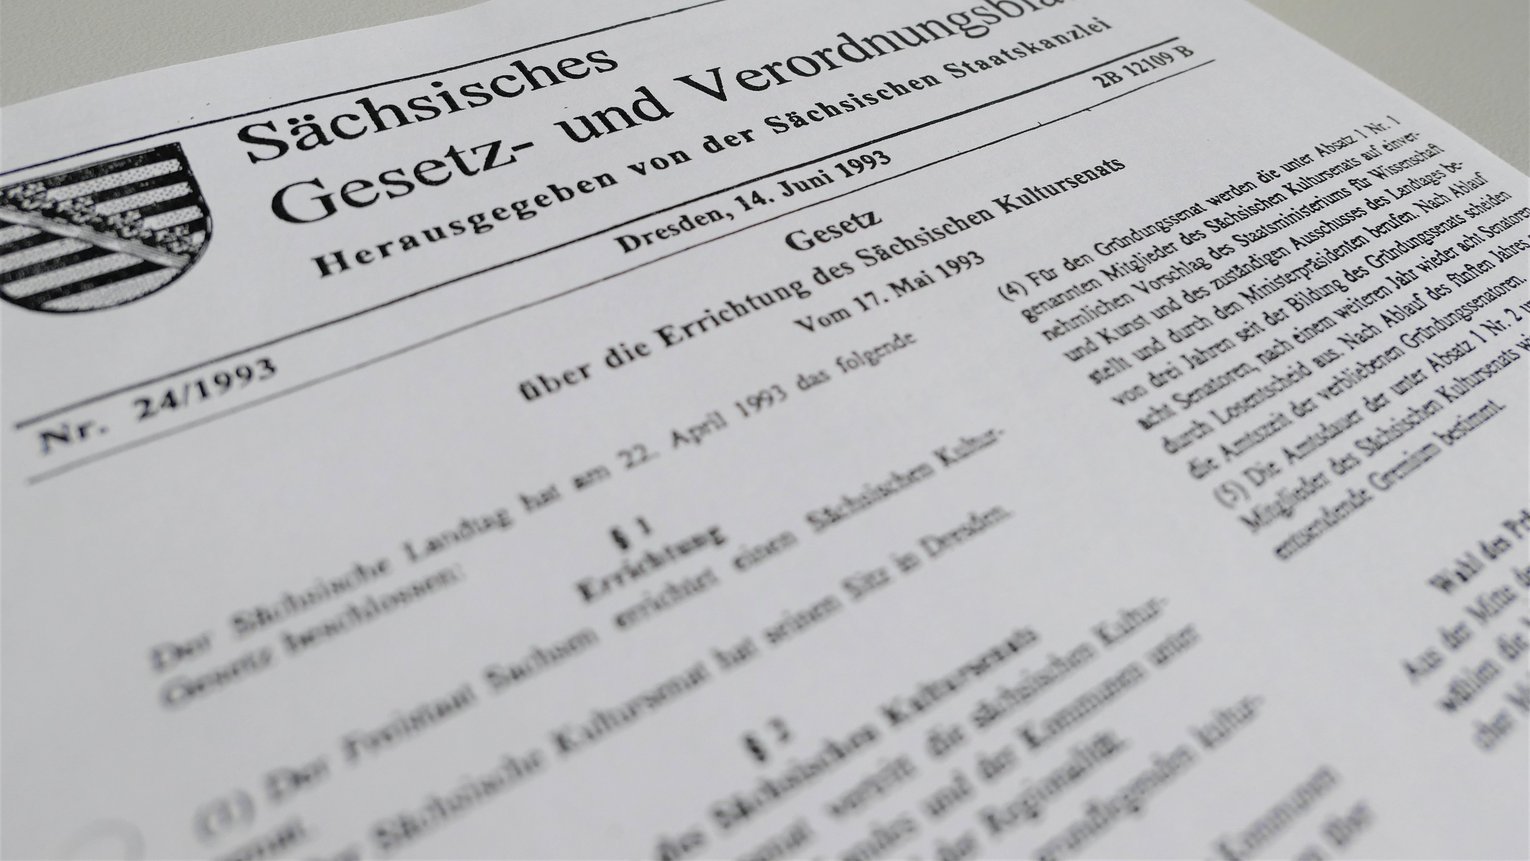 Ein Textausschnitt aus dem Sächsischen Gesetz- und Verordnungsblatt aus dem Jahr 1993 zeigt einen Ausschnitt aus dem Gesetz über die Errichtung des Sächsischen Kultursenats.